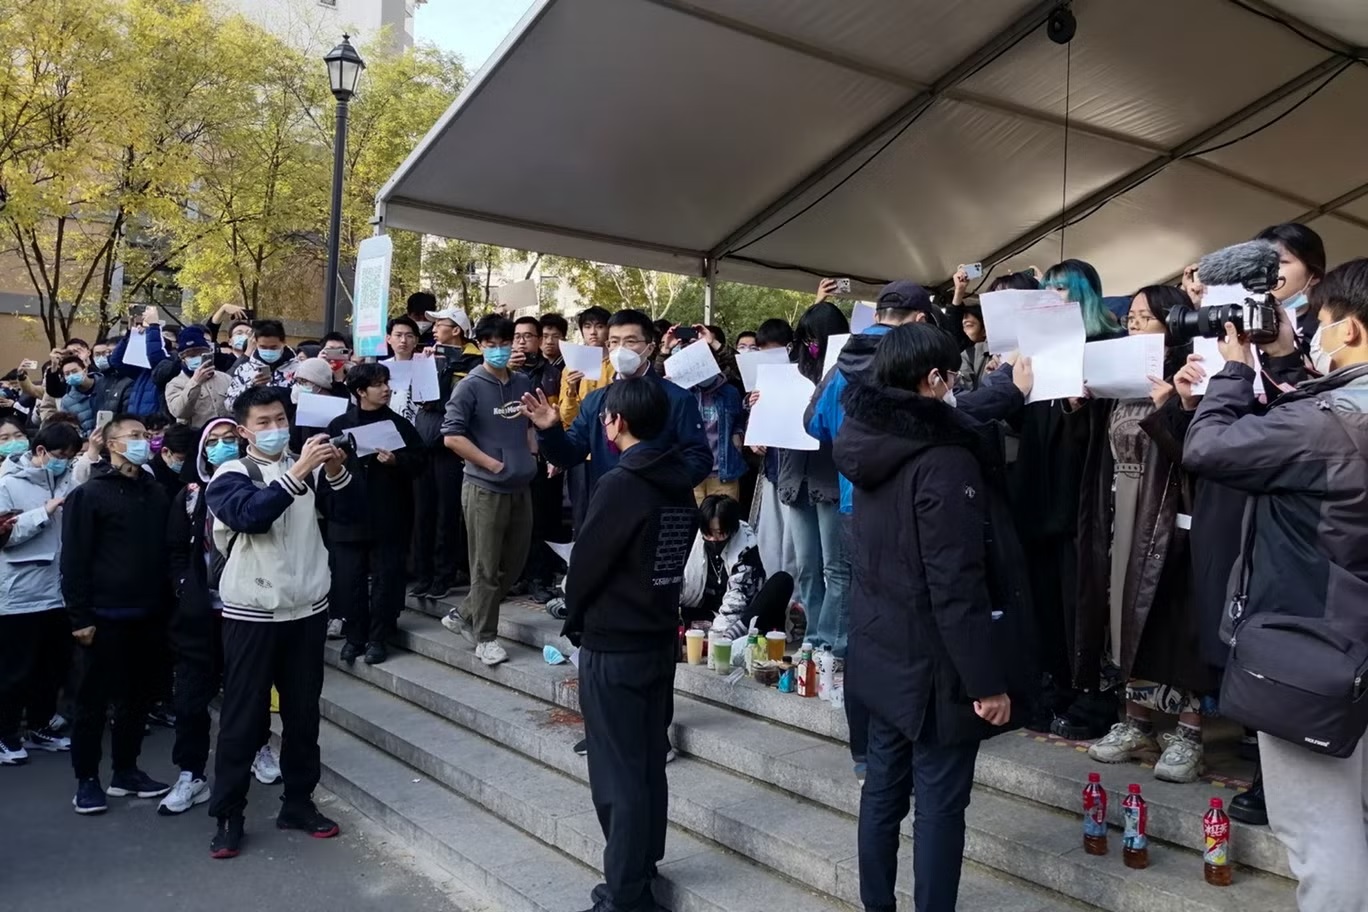 طلاب ينظمون احتجاجاً في جامعة تسينغهوا في بكين يوم الأحد (أ ب)